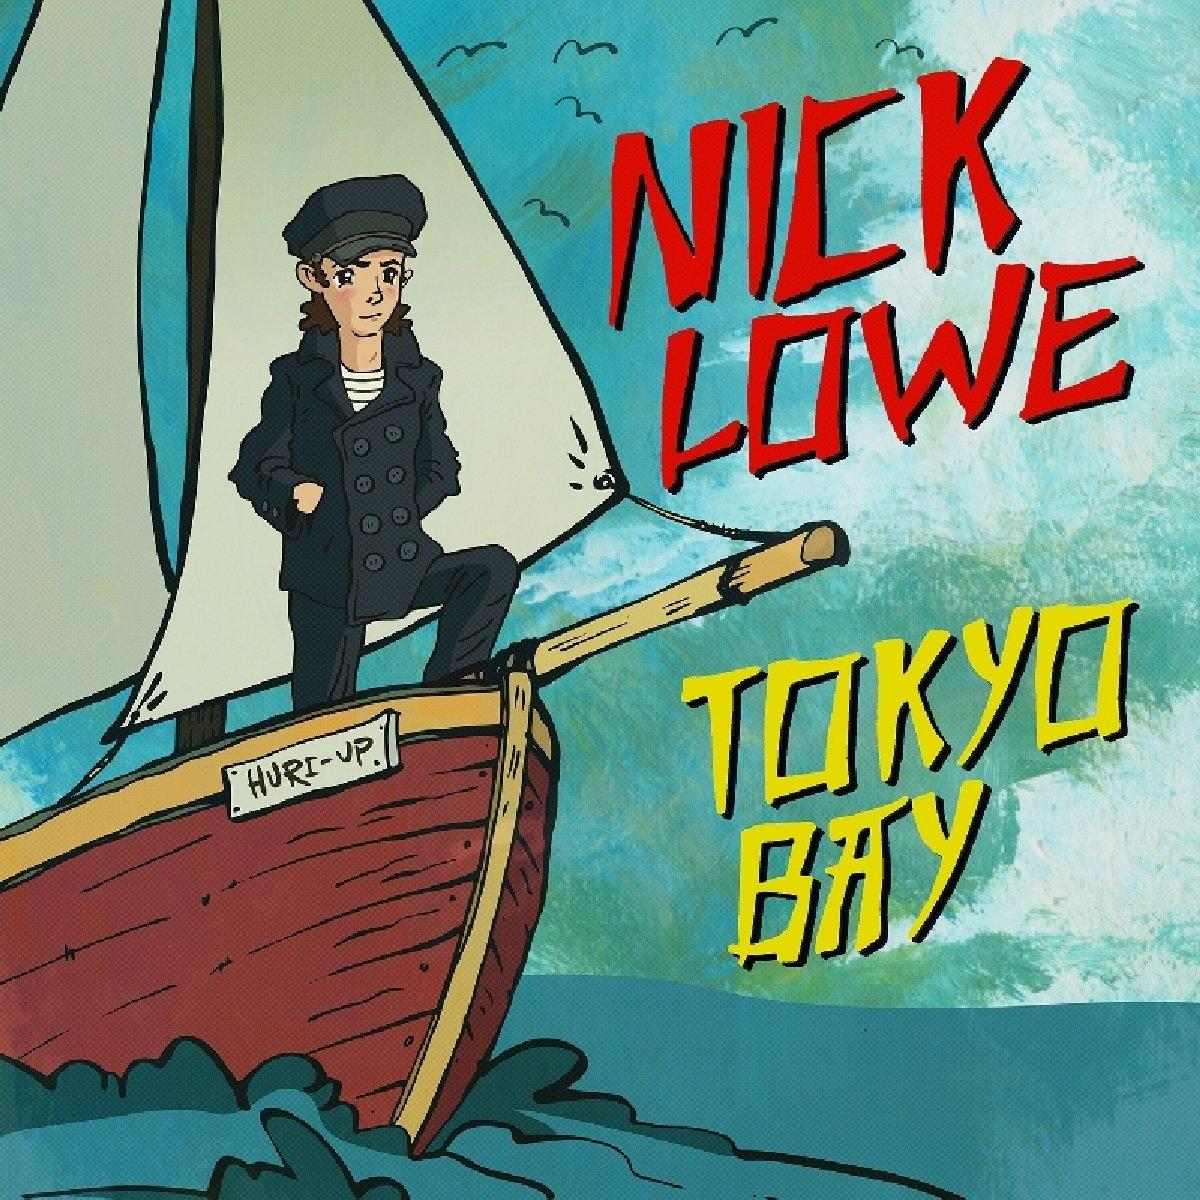 Nick Lowe - Bay/Crying (inkl.Download - Inside Code) Tokyo (Vinyl)